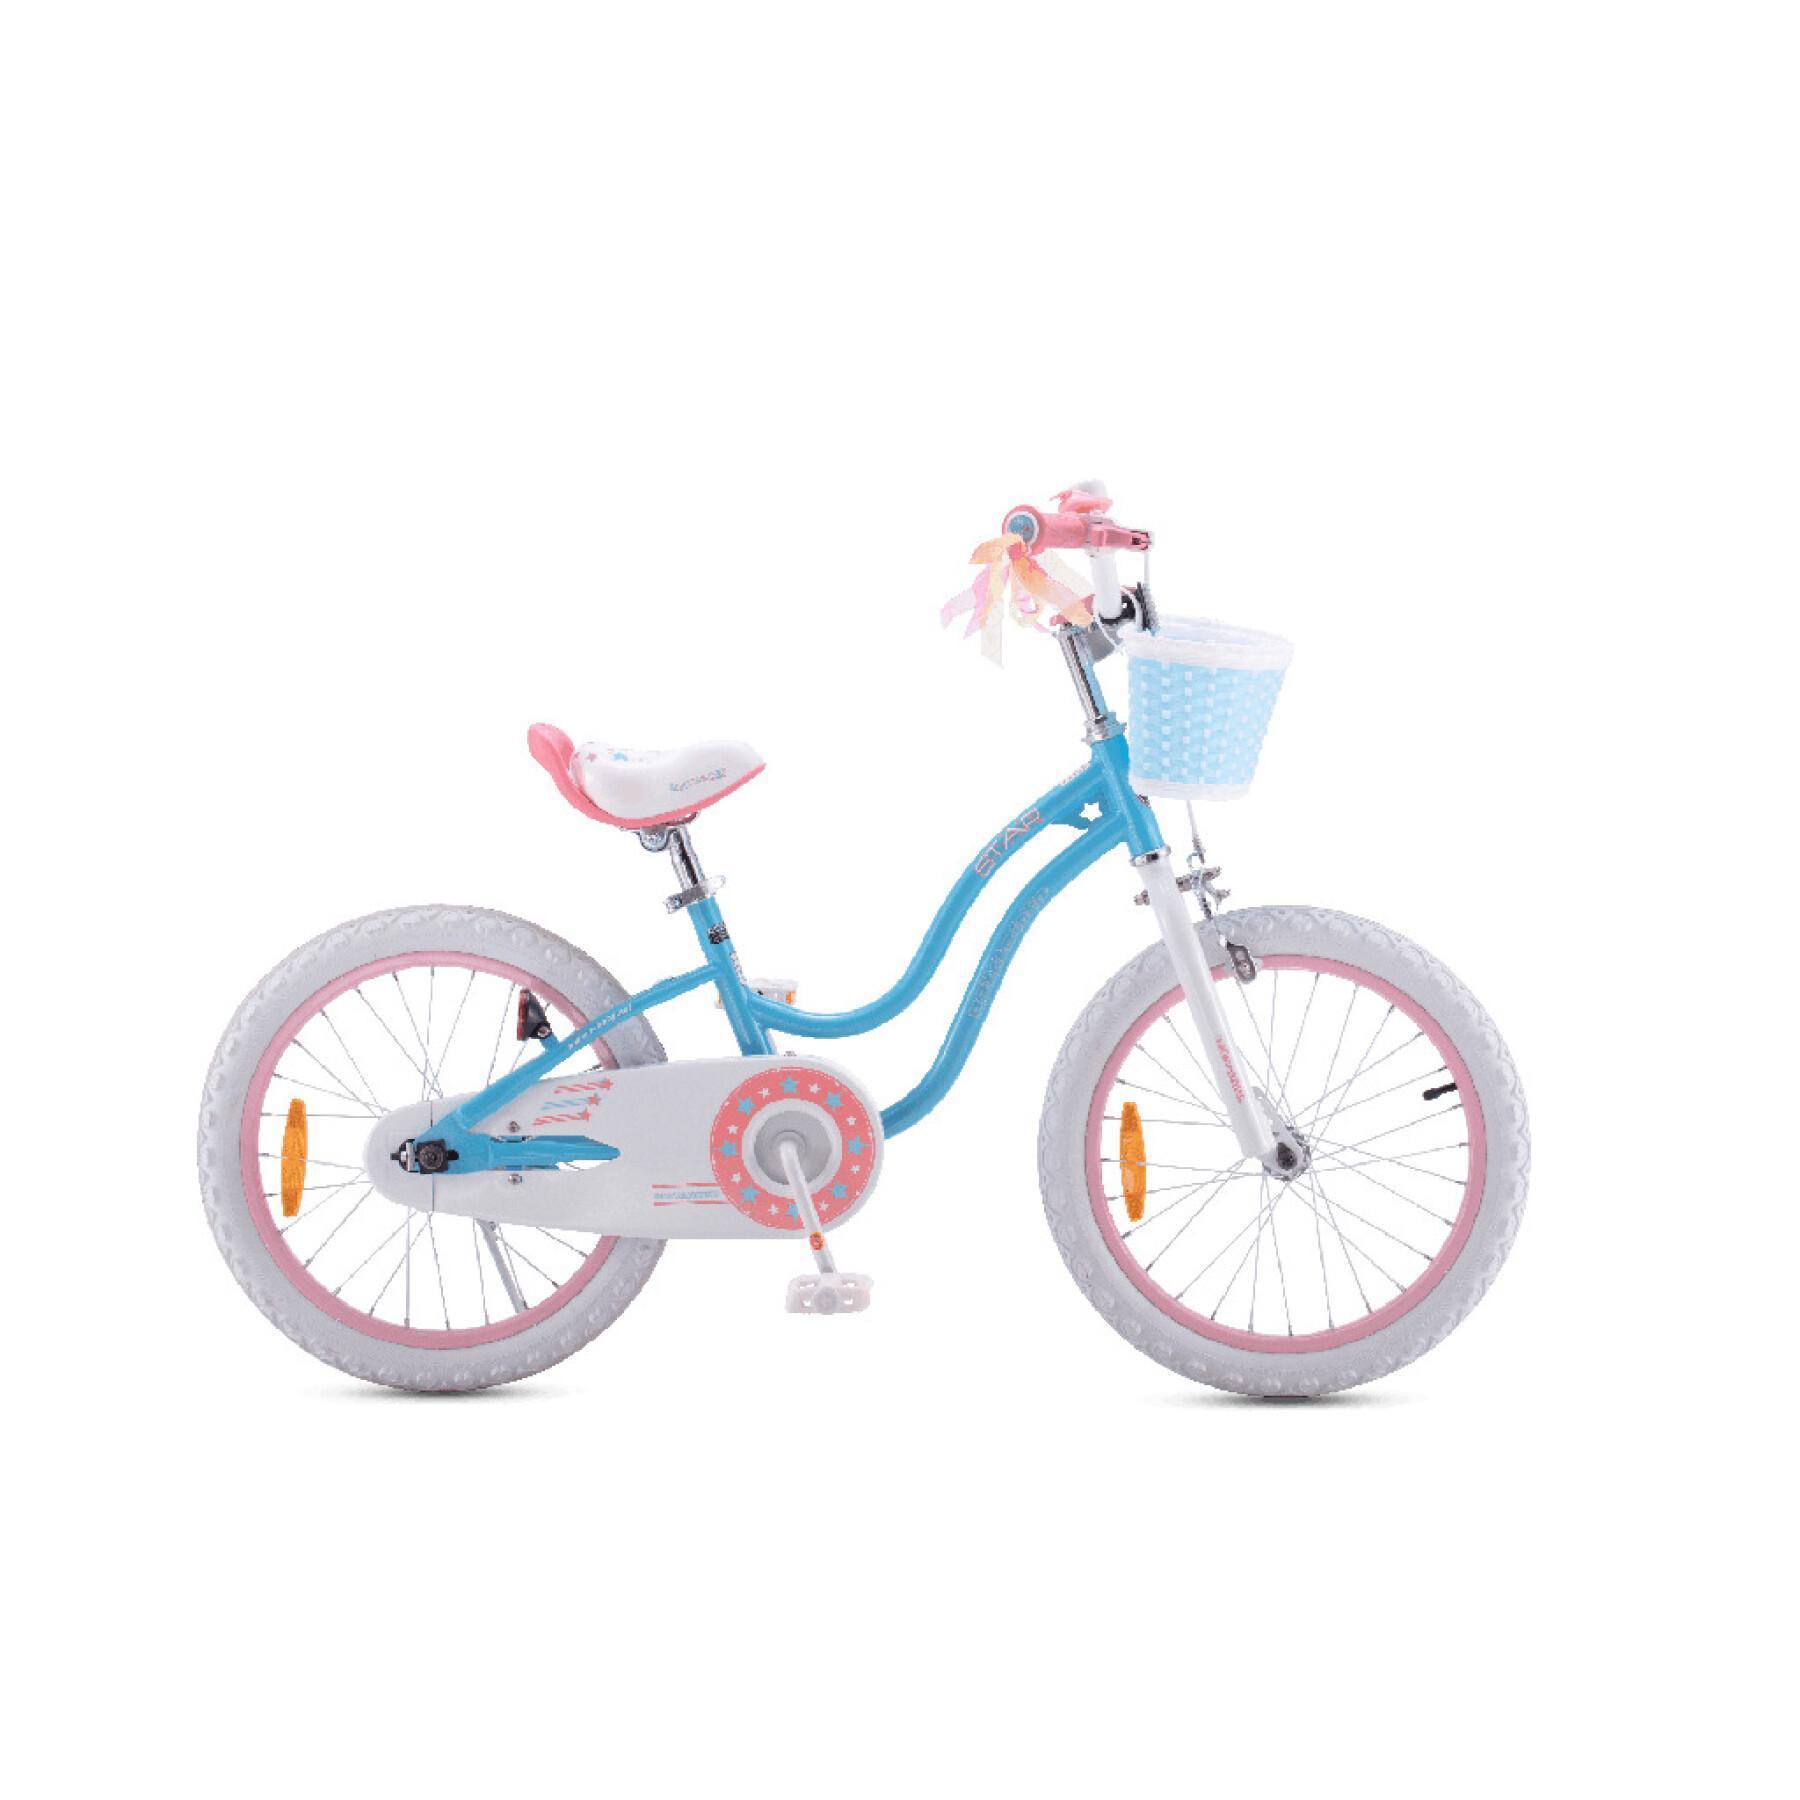 Bicicleta para crianças RoyalBaby Star 14